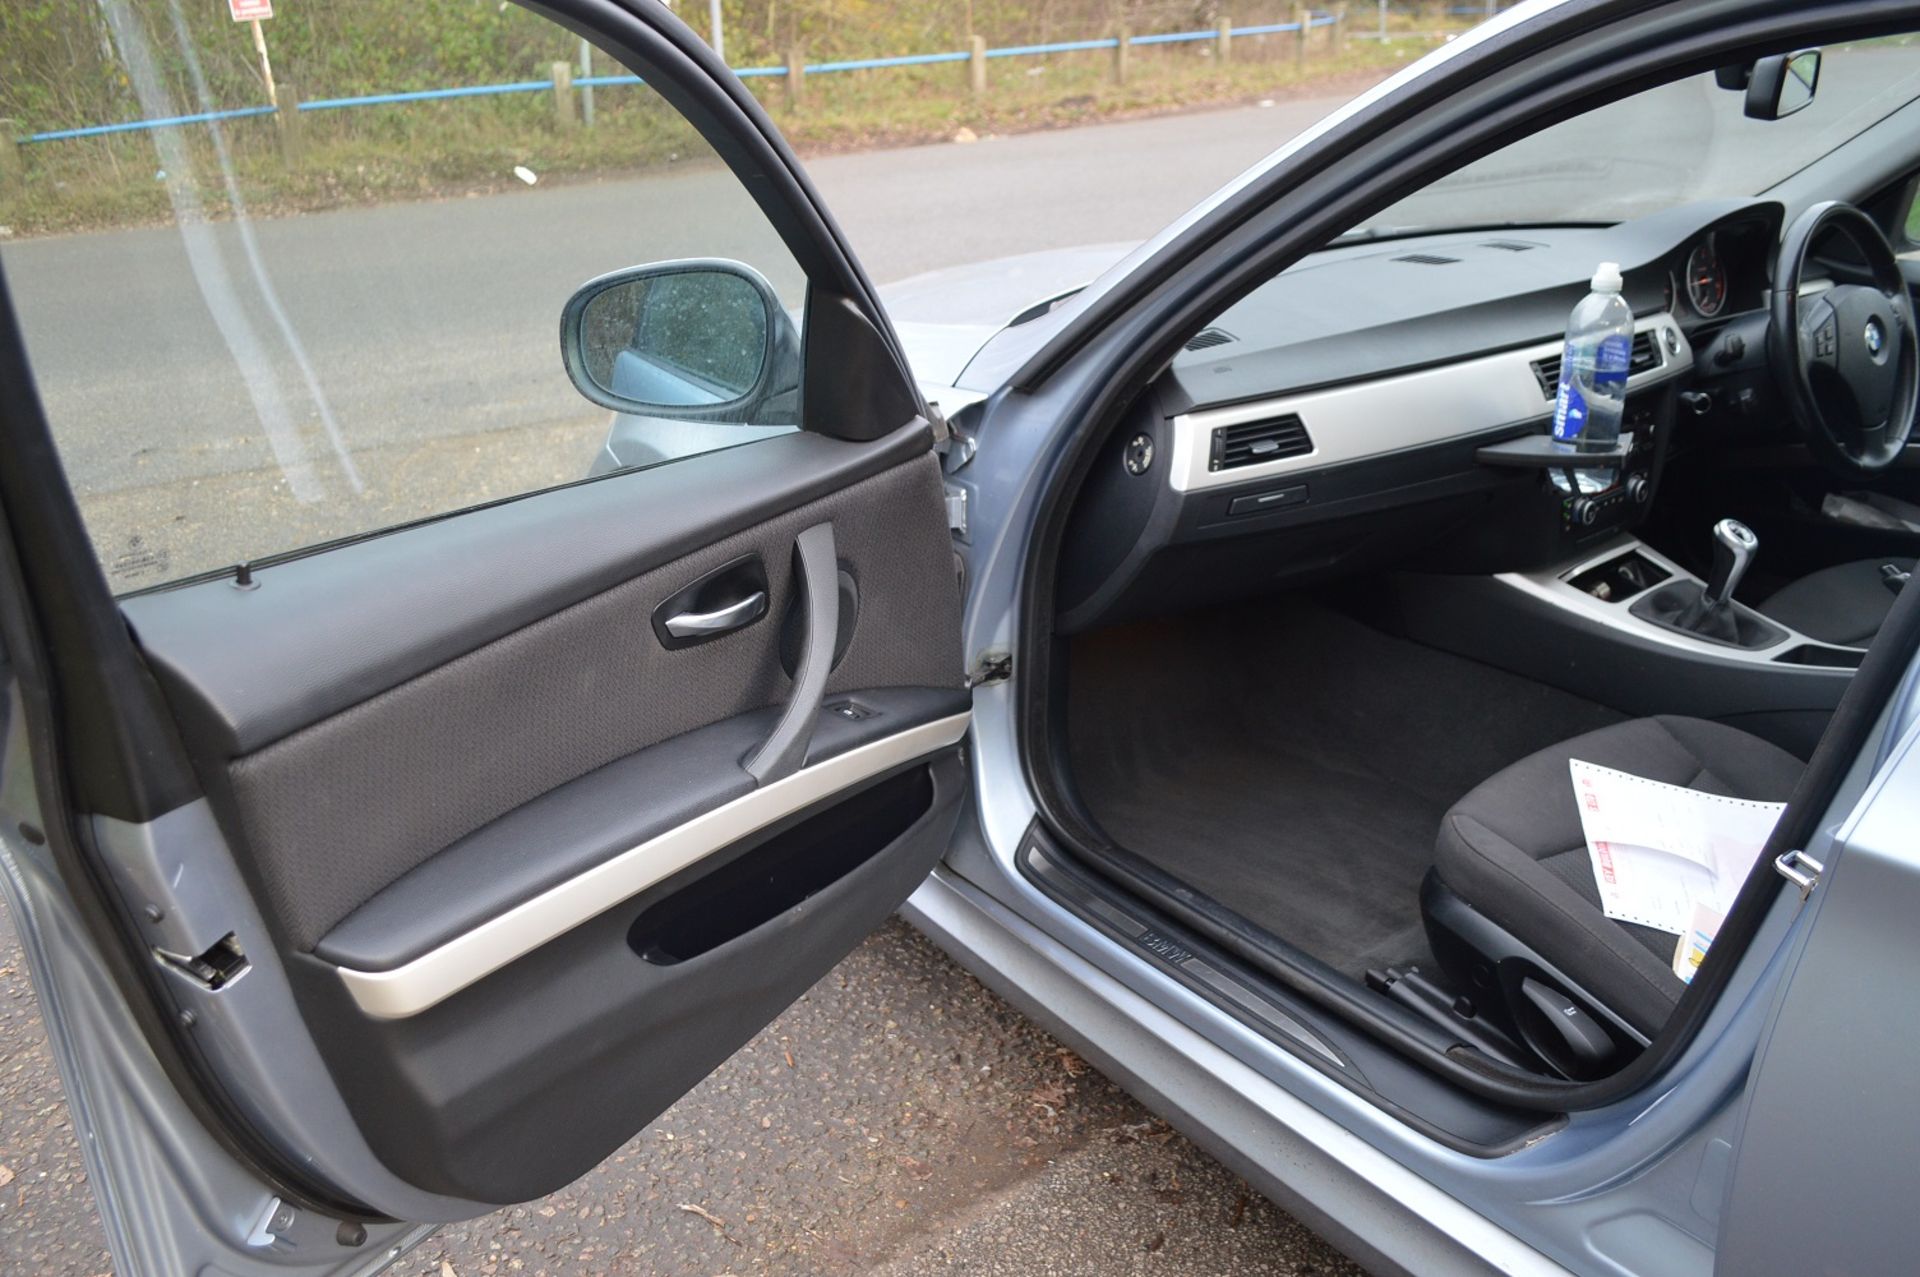 2008/58 REG BMW 318D SE BLUE DIESEL 4 DOOR SALOON, 6 SPEED MANUAL GEARBOX *NO VAT* - Image 7 of 16